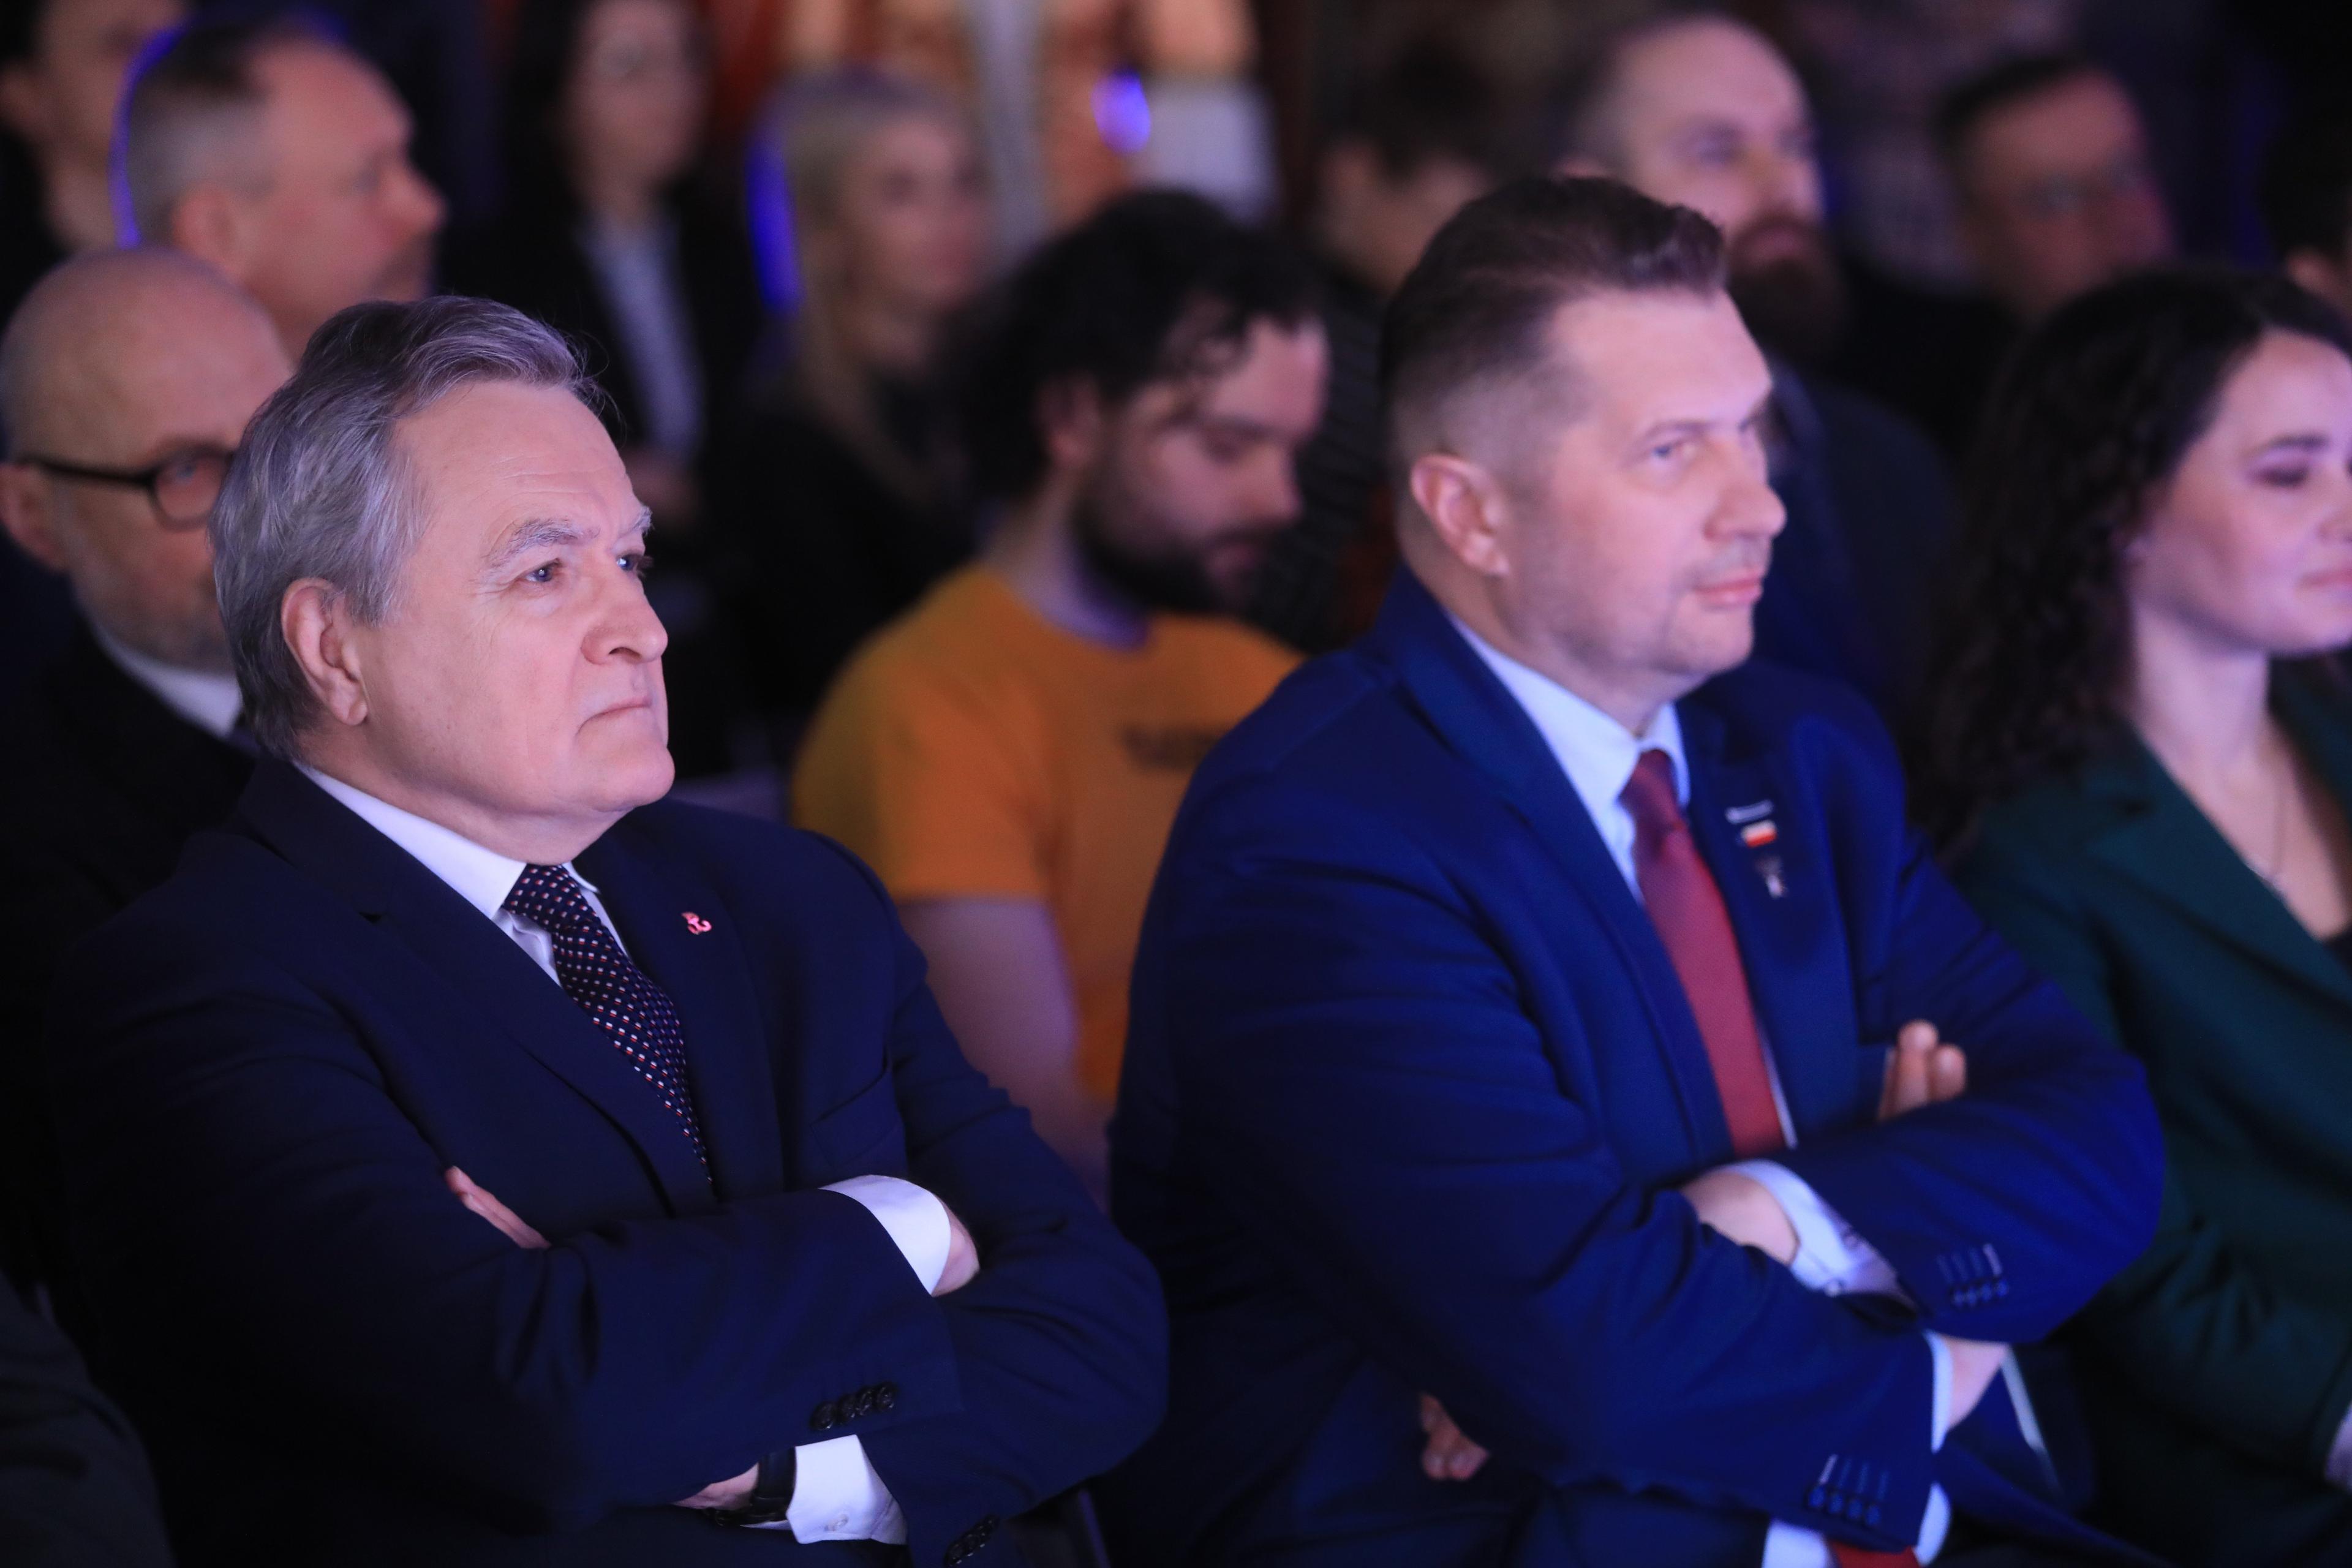 Dwaj mężczyźni - Piotr Gliński i Przemysław Czarnek - siedzą z założonymi rękami na sali pełnej ludzi